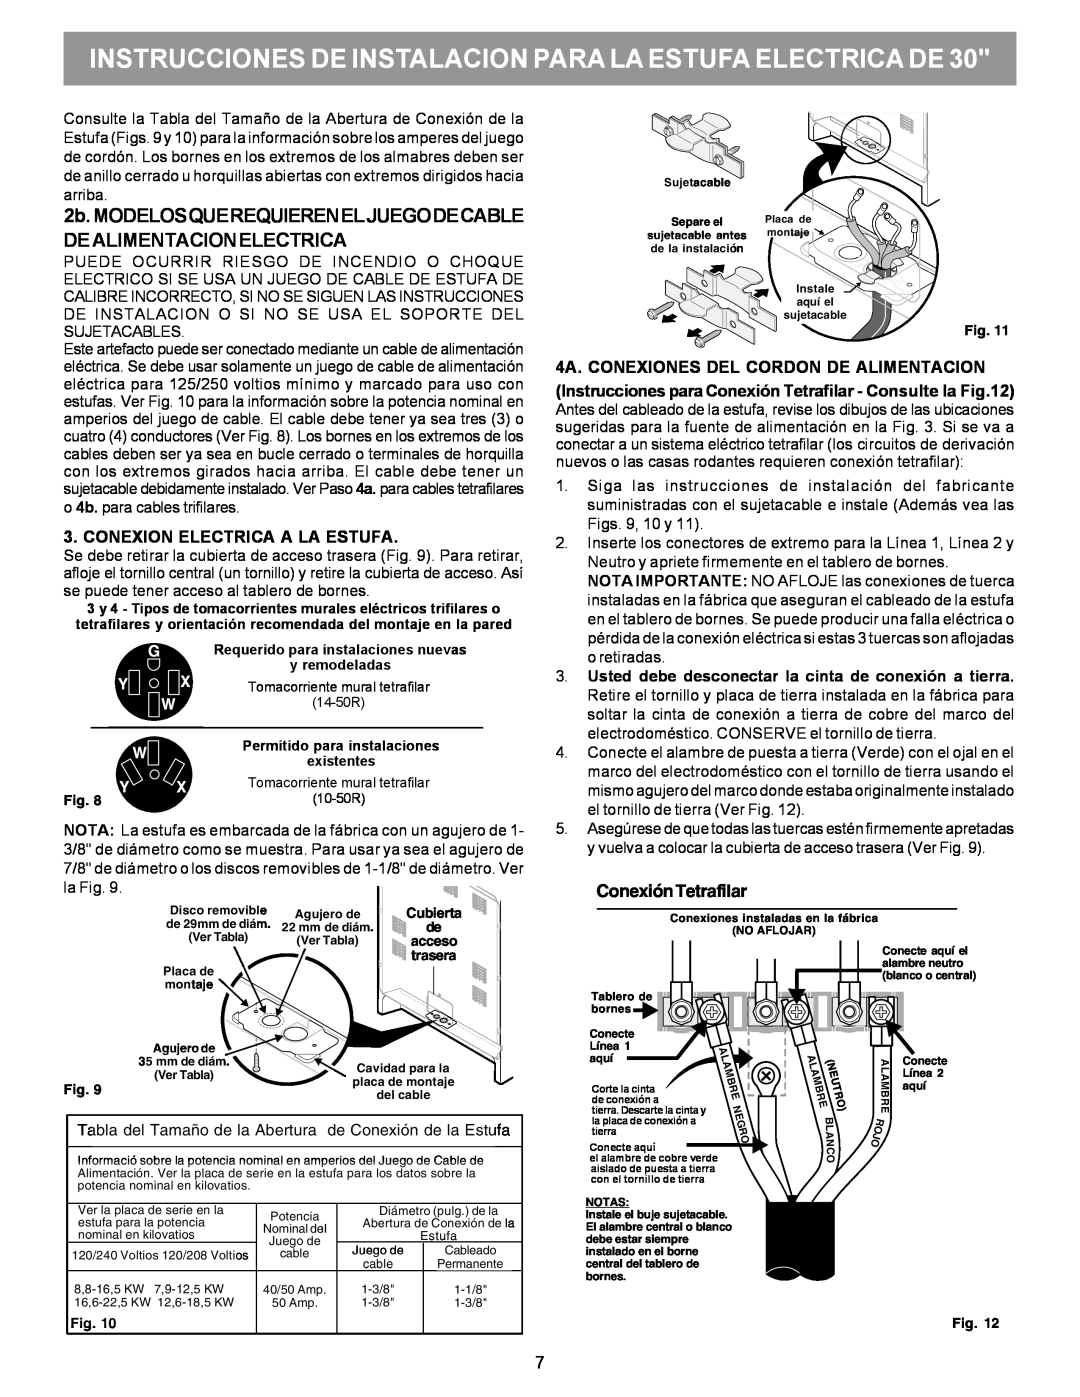 Frigidaire 316454912 manual 2b. MODELOSQUEREQUIERENELJUEGODECABLE DEALIMENTACIONELECTRICA, Conexion Electrica A La Estufa 